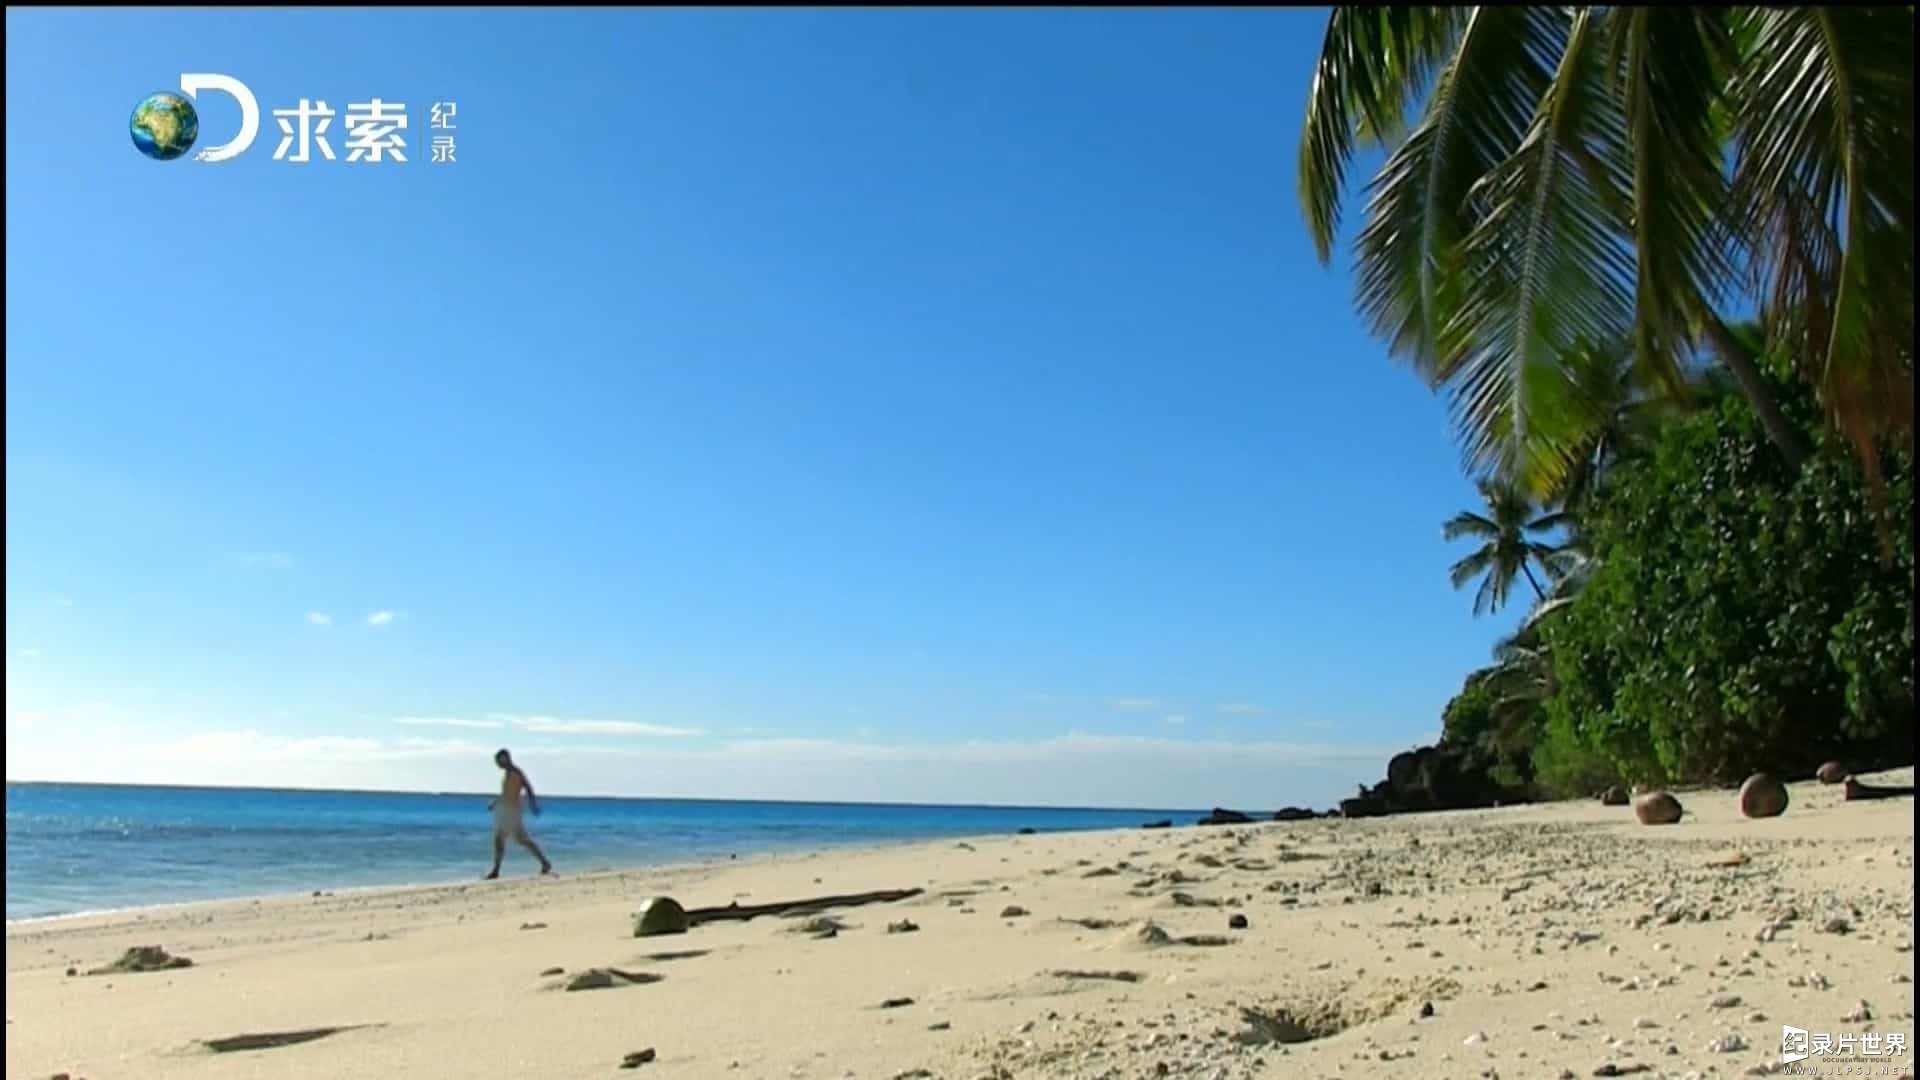 德哥荒岛余生60天完整视频《只身在荒岛 Naked Castaway》